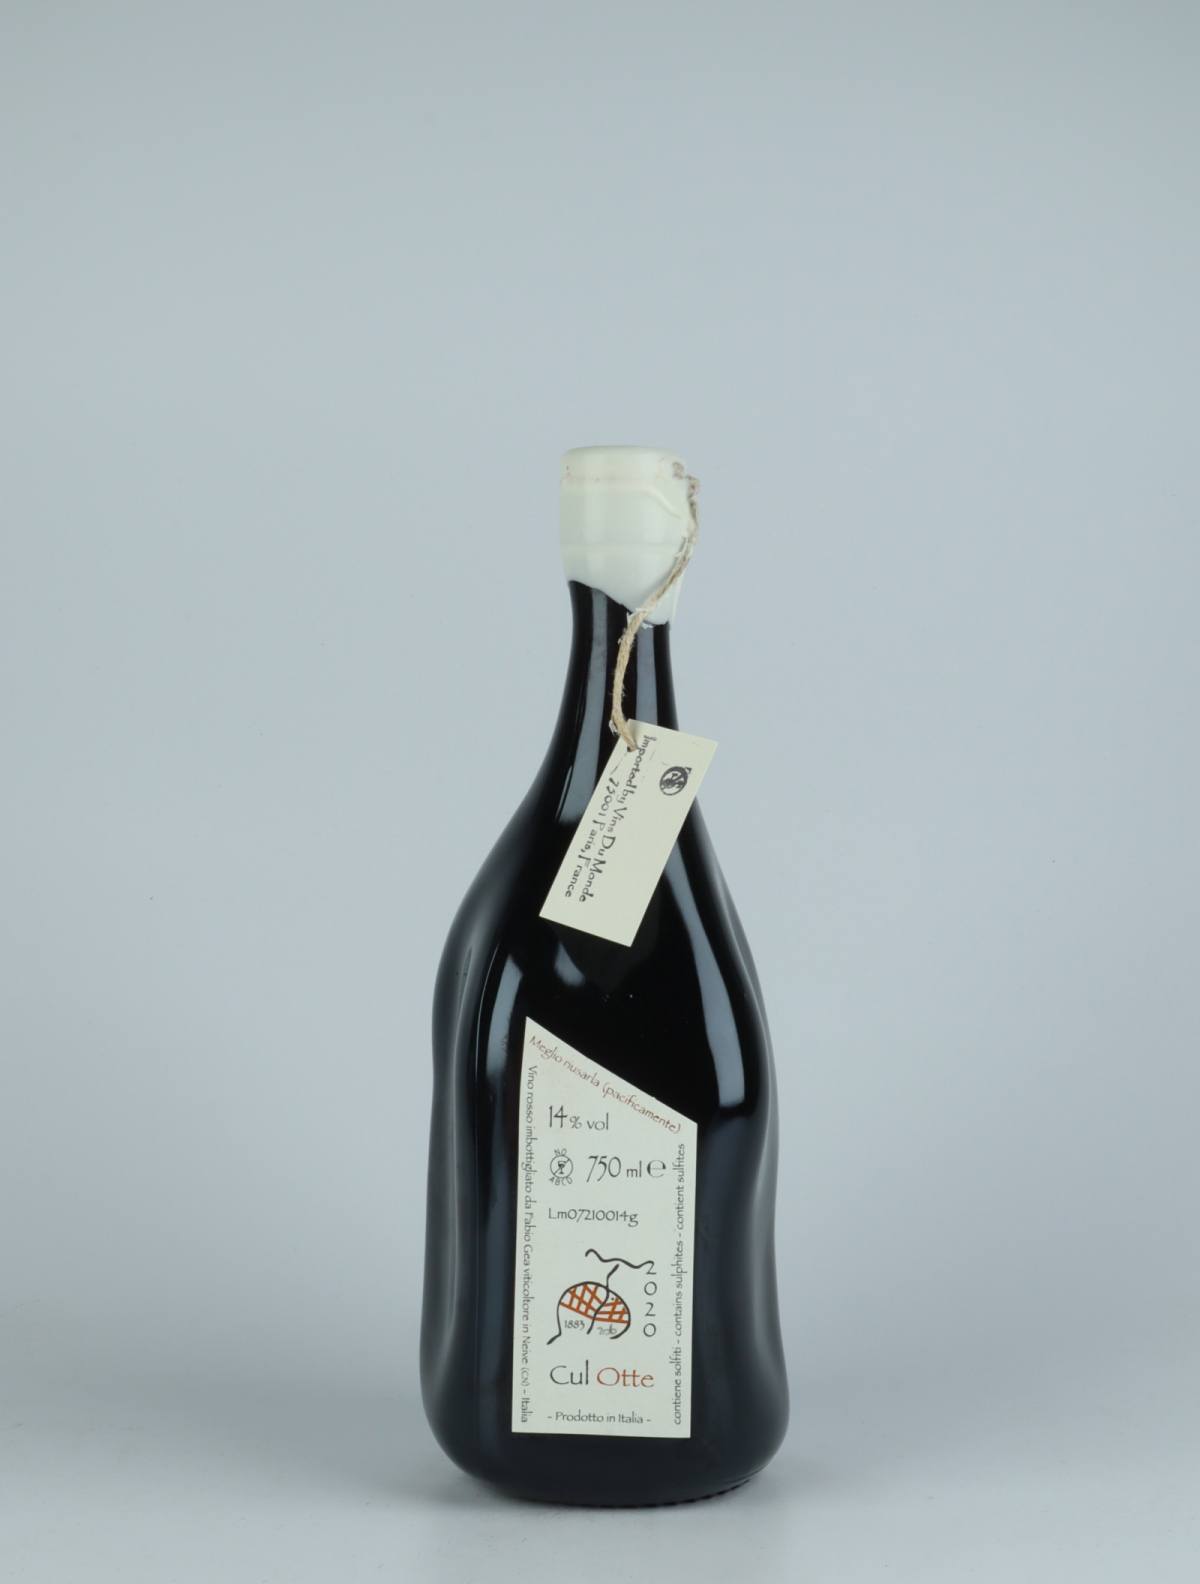 A bottle 2020 Cul Otte Red wine from Fabio Gea, Piedmont in Italy